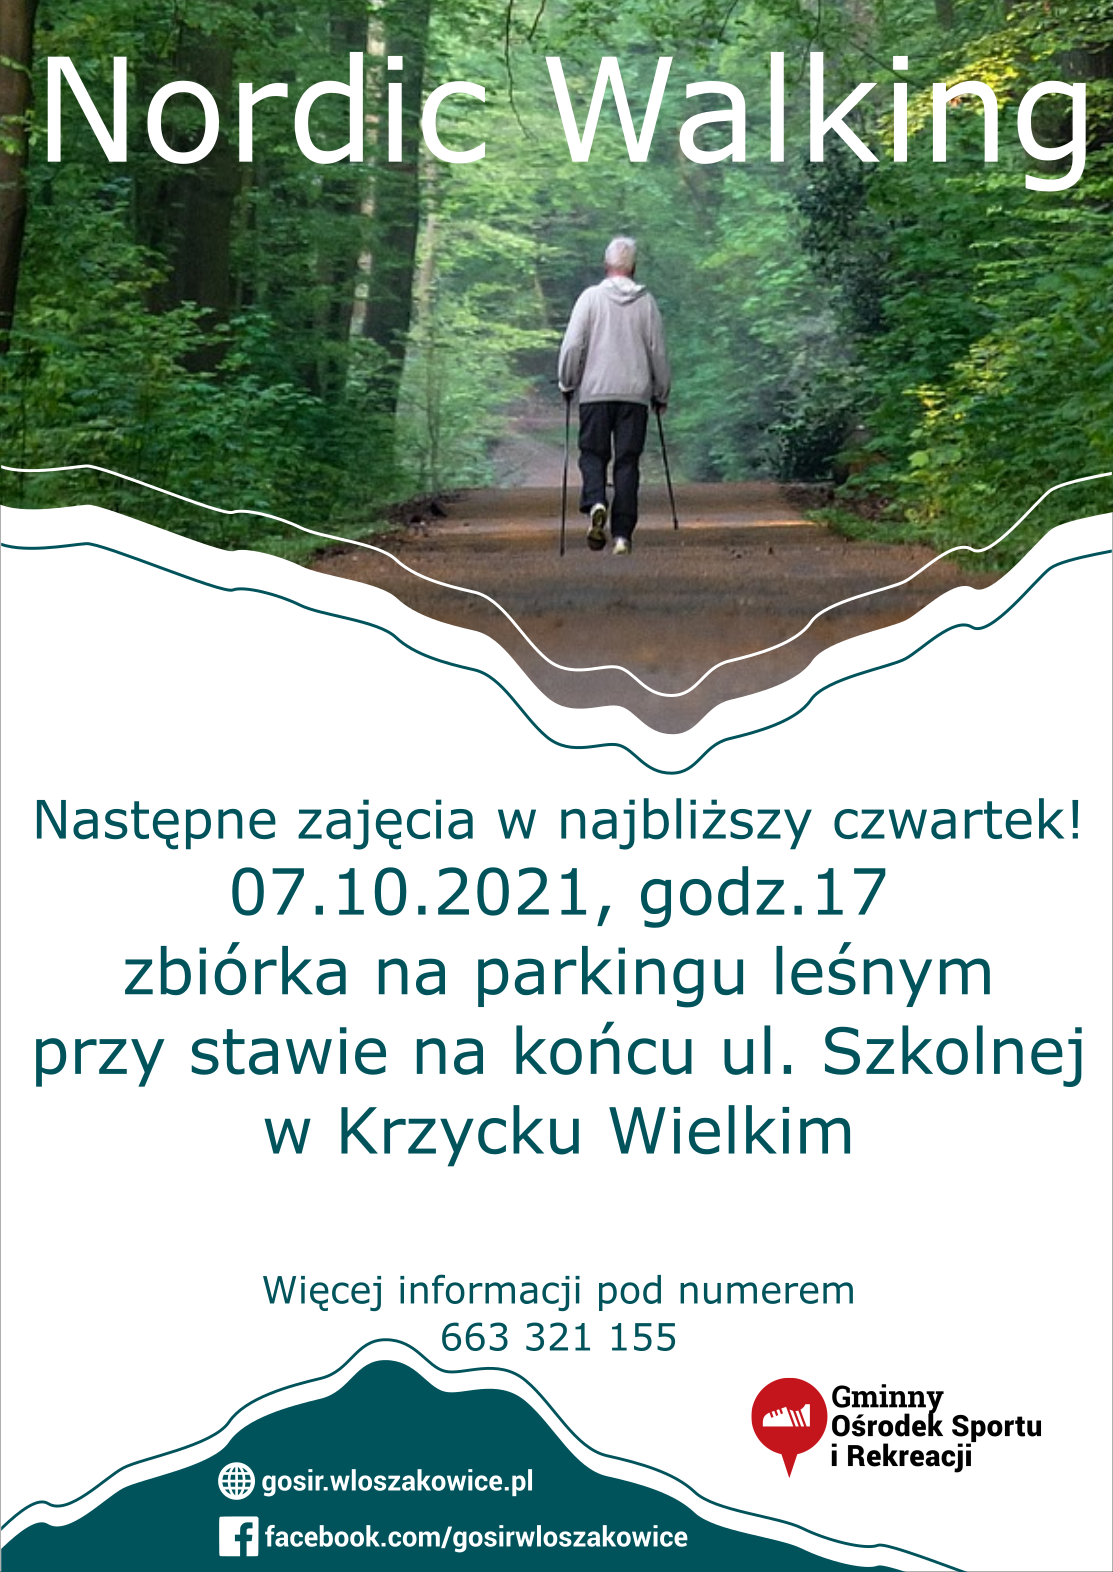 nordic_walking_kw_2021.png - 1,23 MB